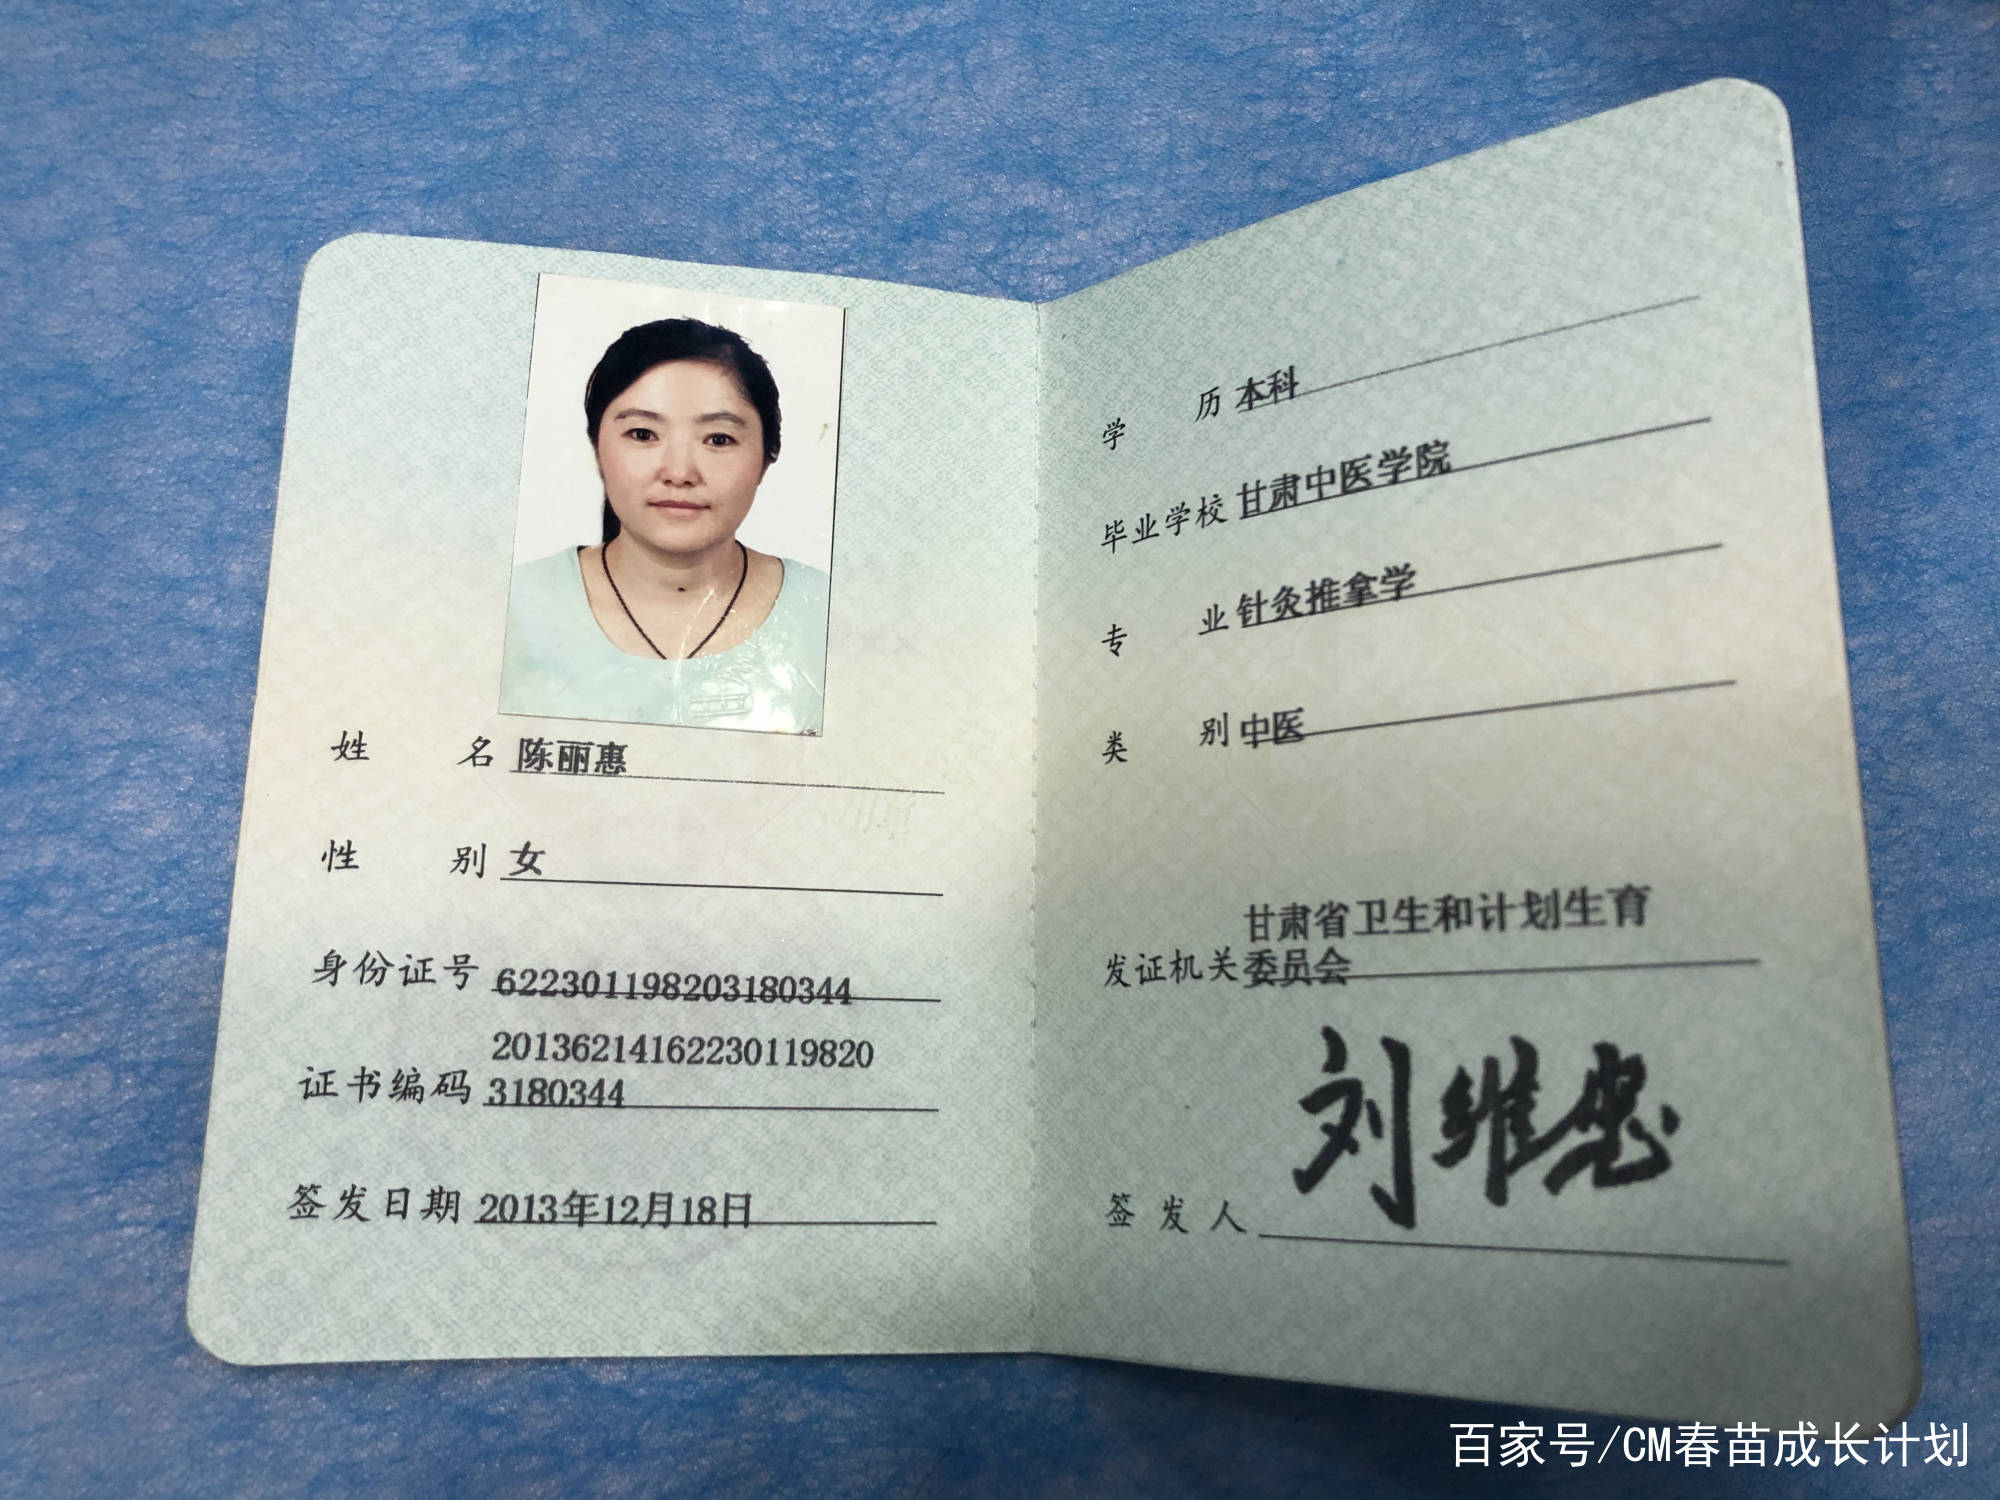 2009-2020年,于兰飞社区卫生服务站工作 2013年获得执业医师资格证书